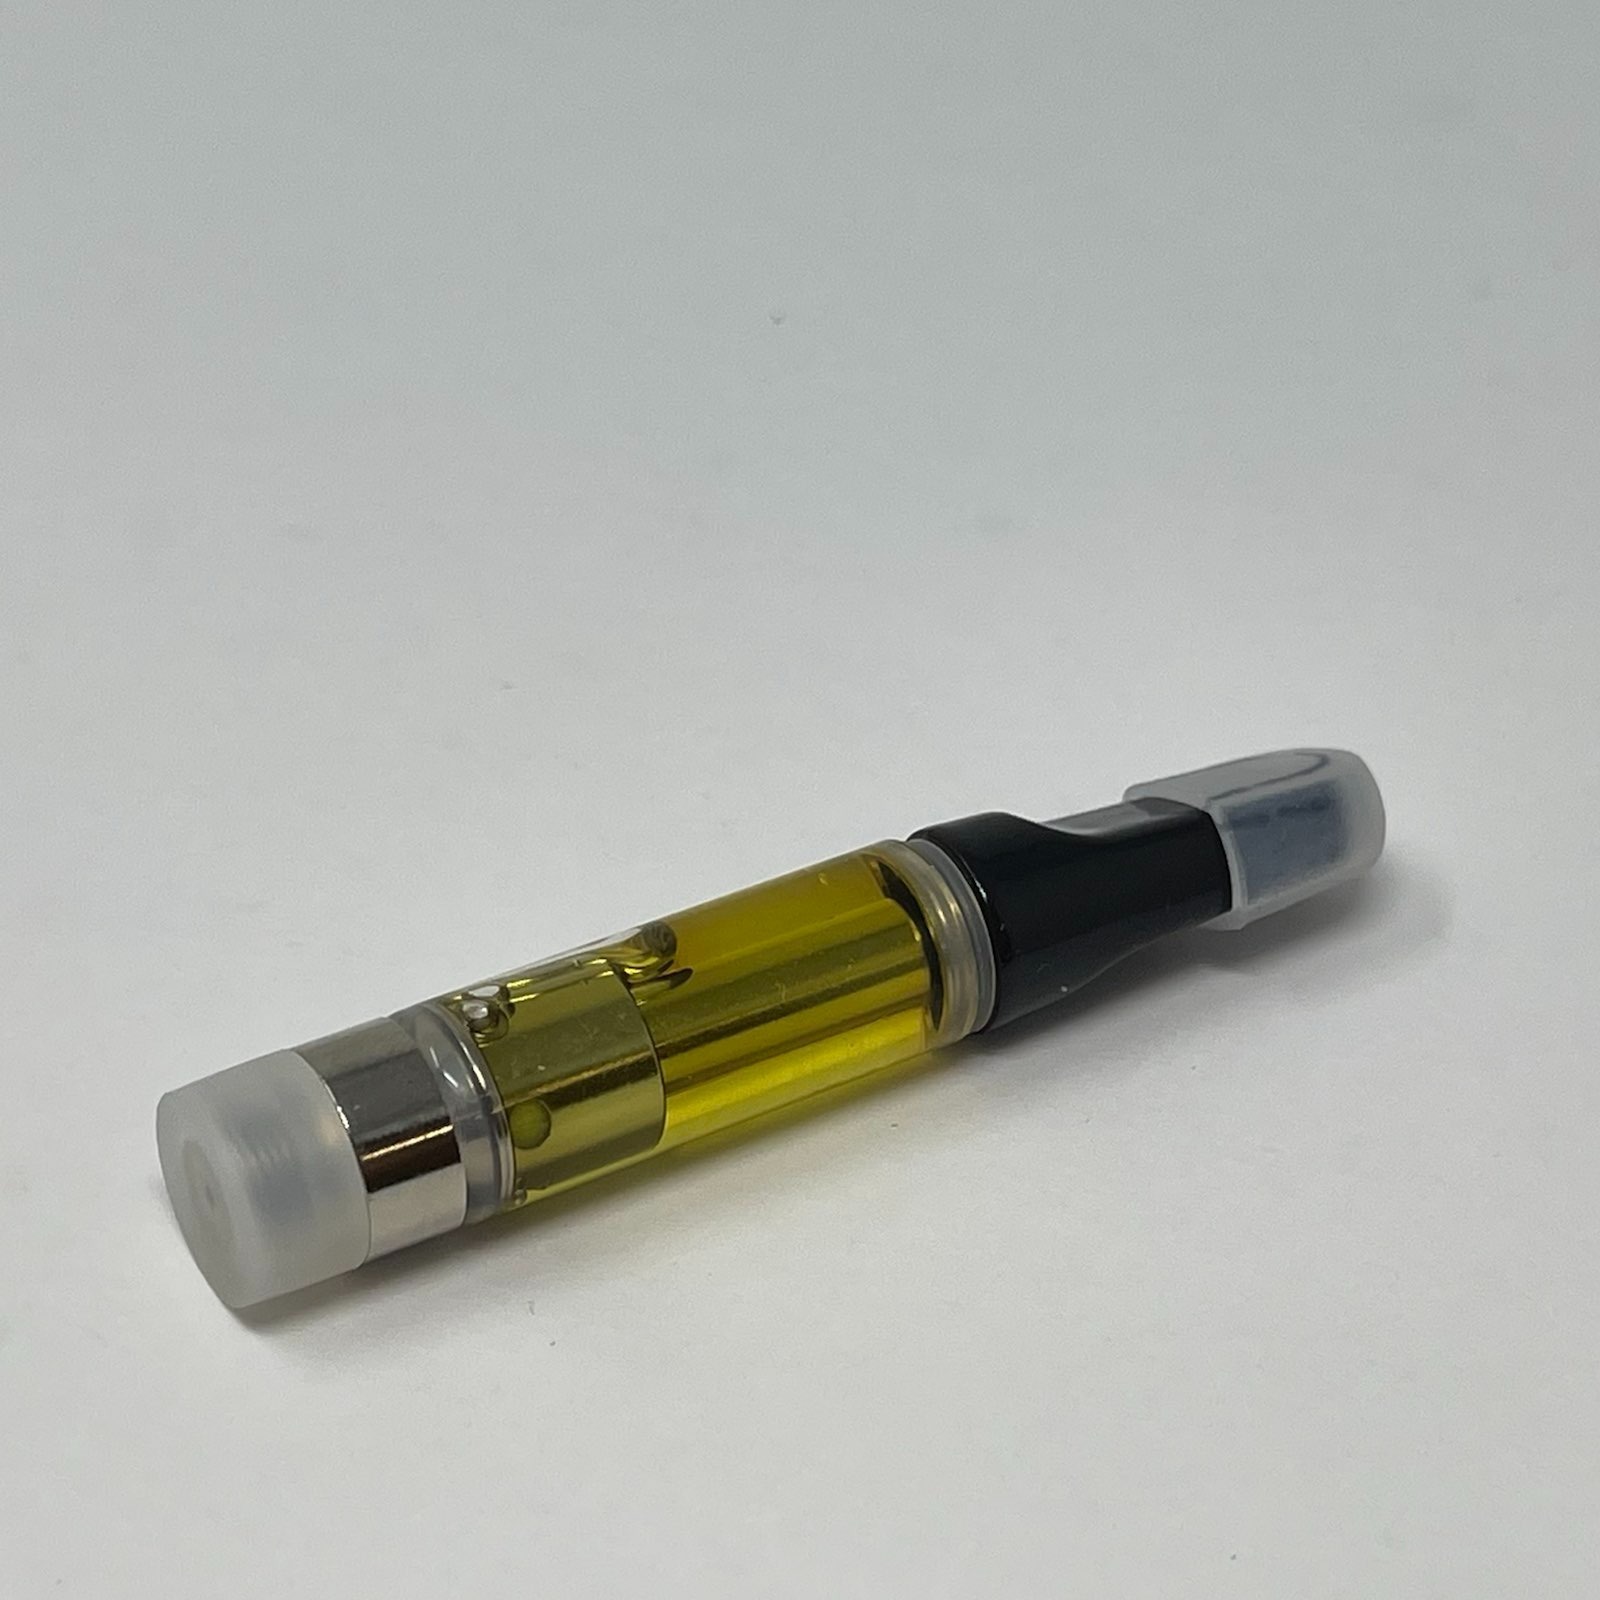 Buy Vape Pen Cartridges 1.1G By Astro Quads - Multiple Flavors ...